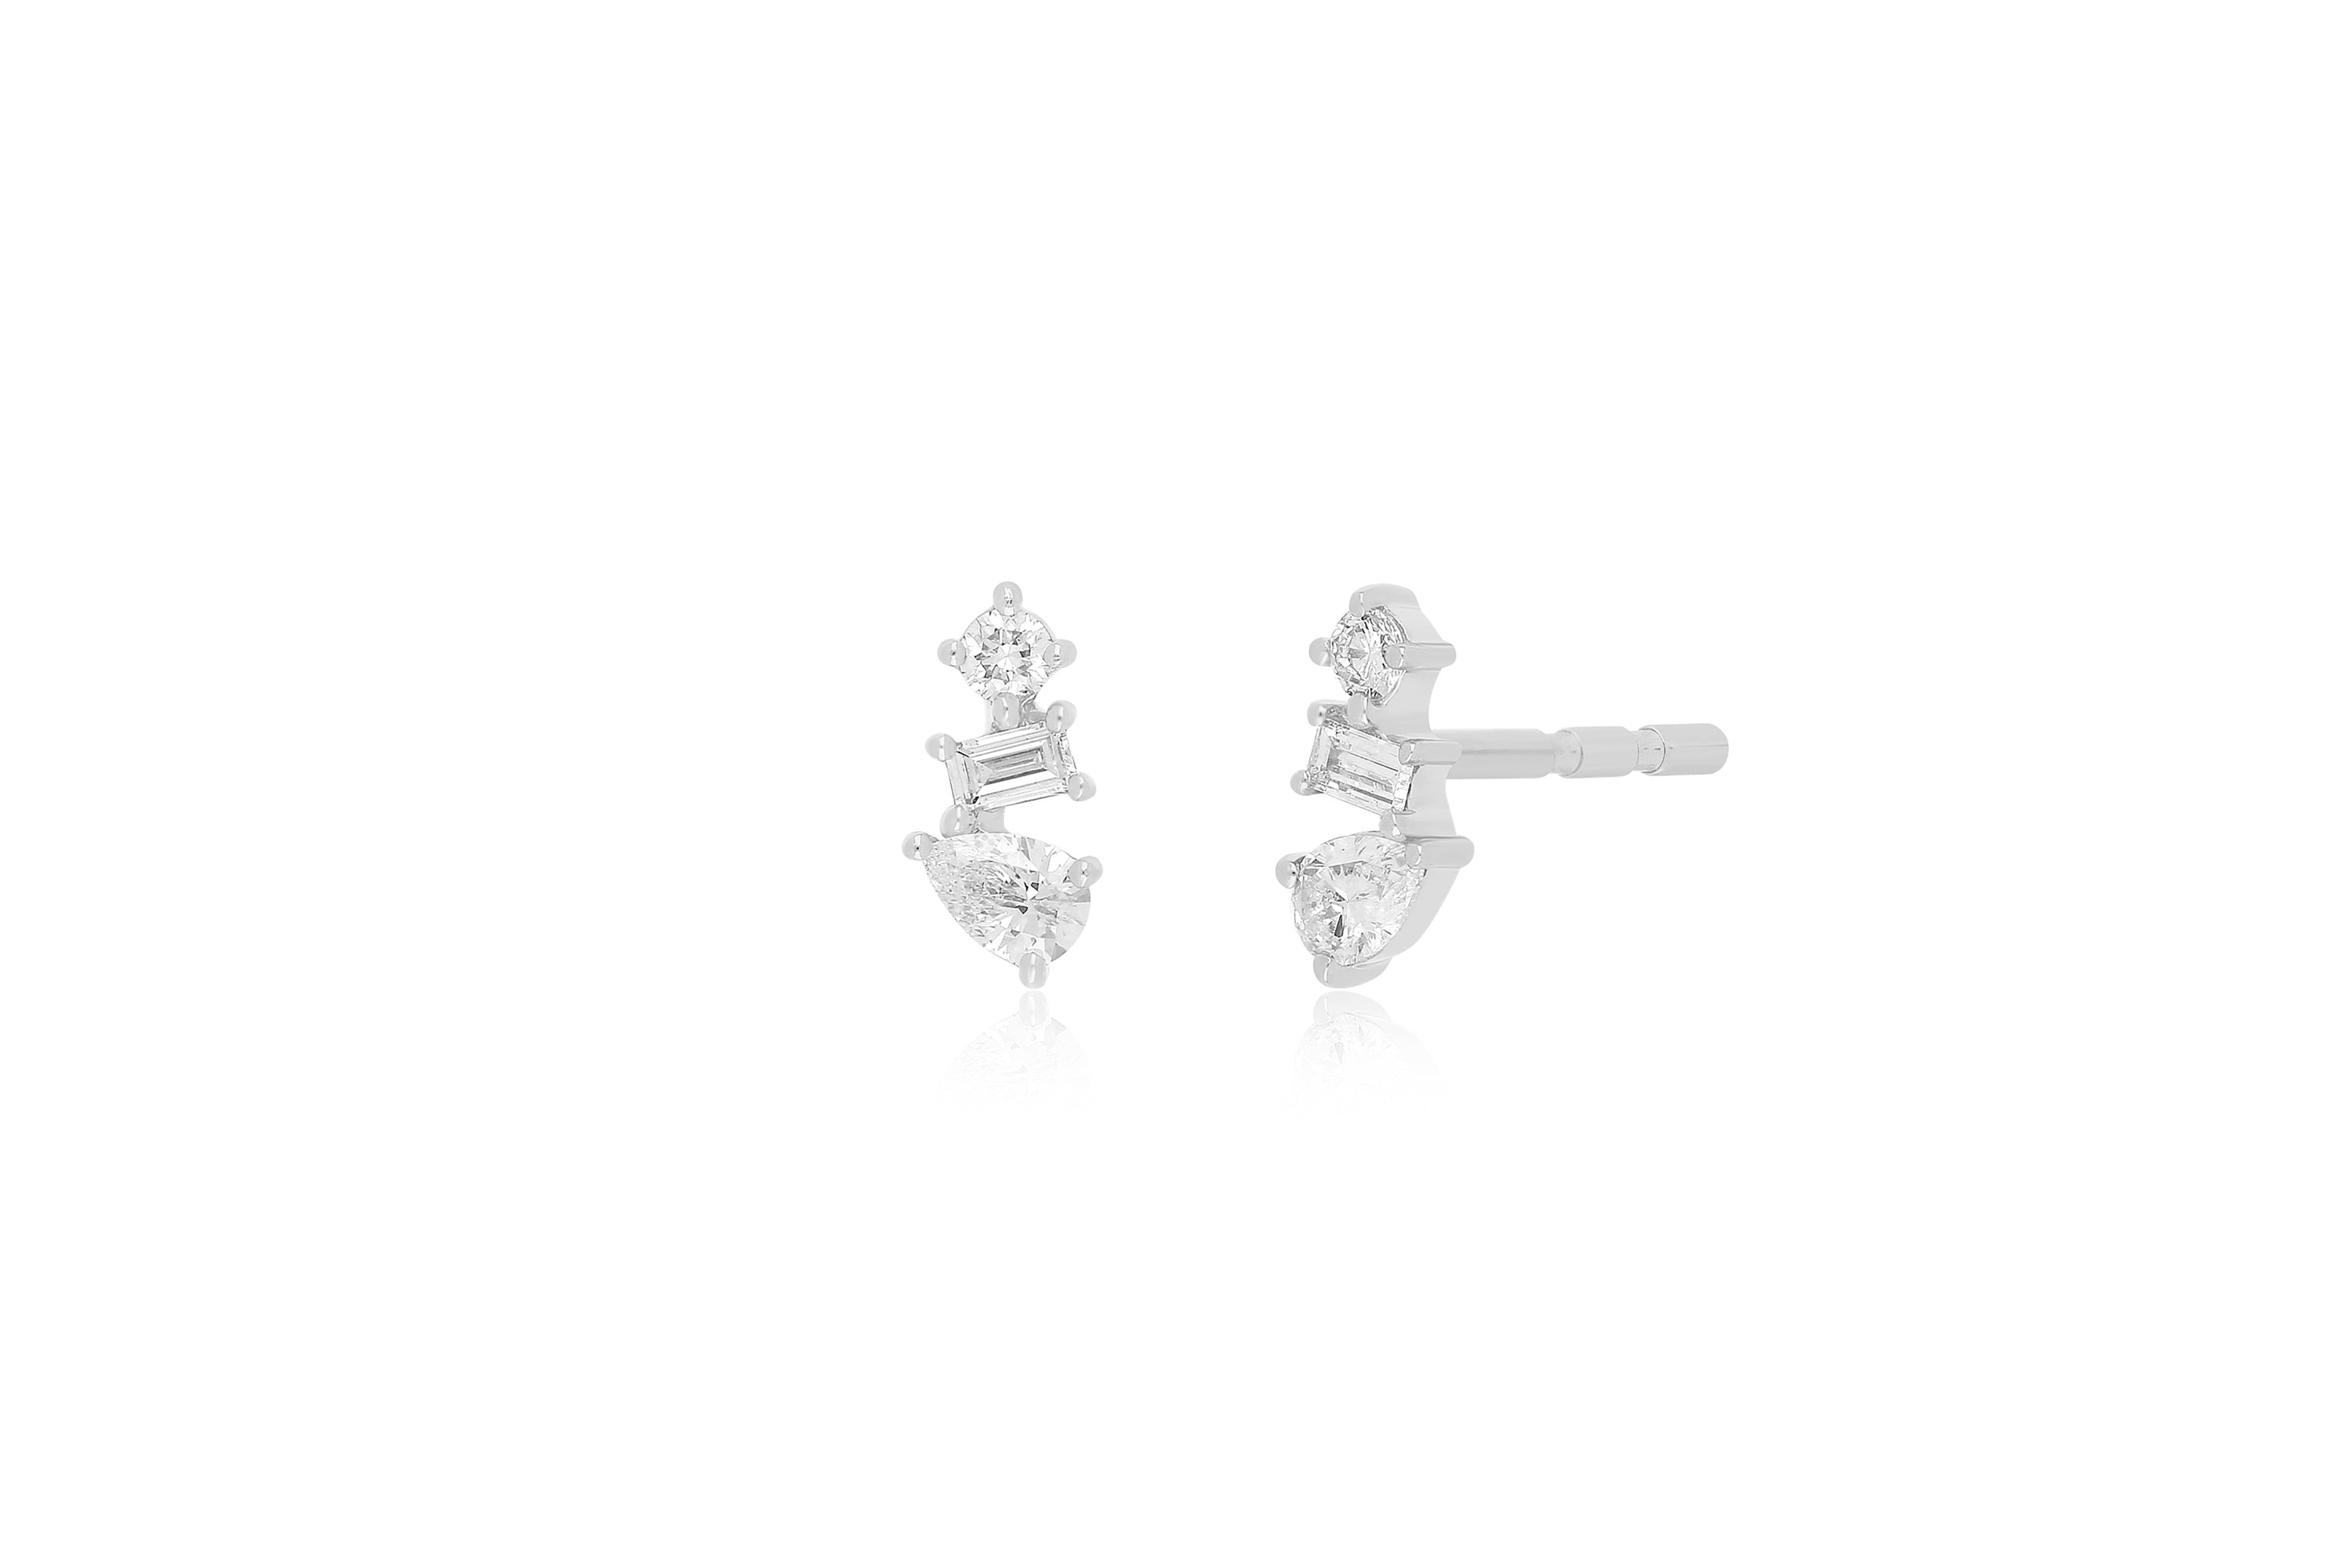 Multi Faceted Diamond Stud Earring in 14k white gold